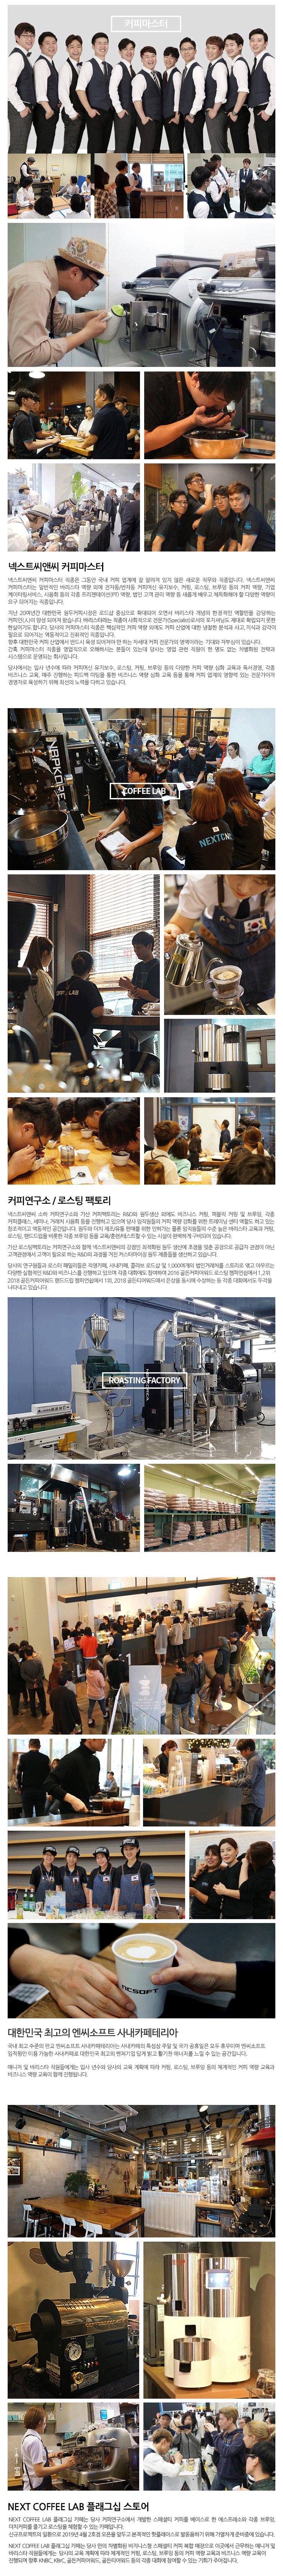 대한민국 No.1 커피문화 창조기업과 함께 할 인재를 찾습니다!!